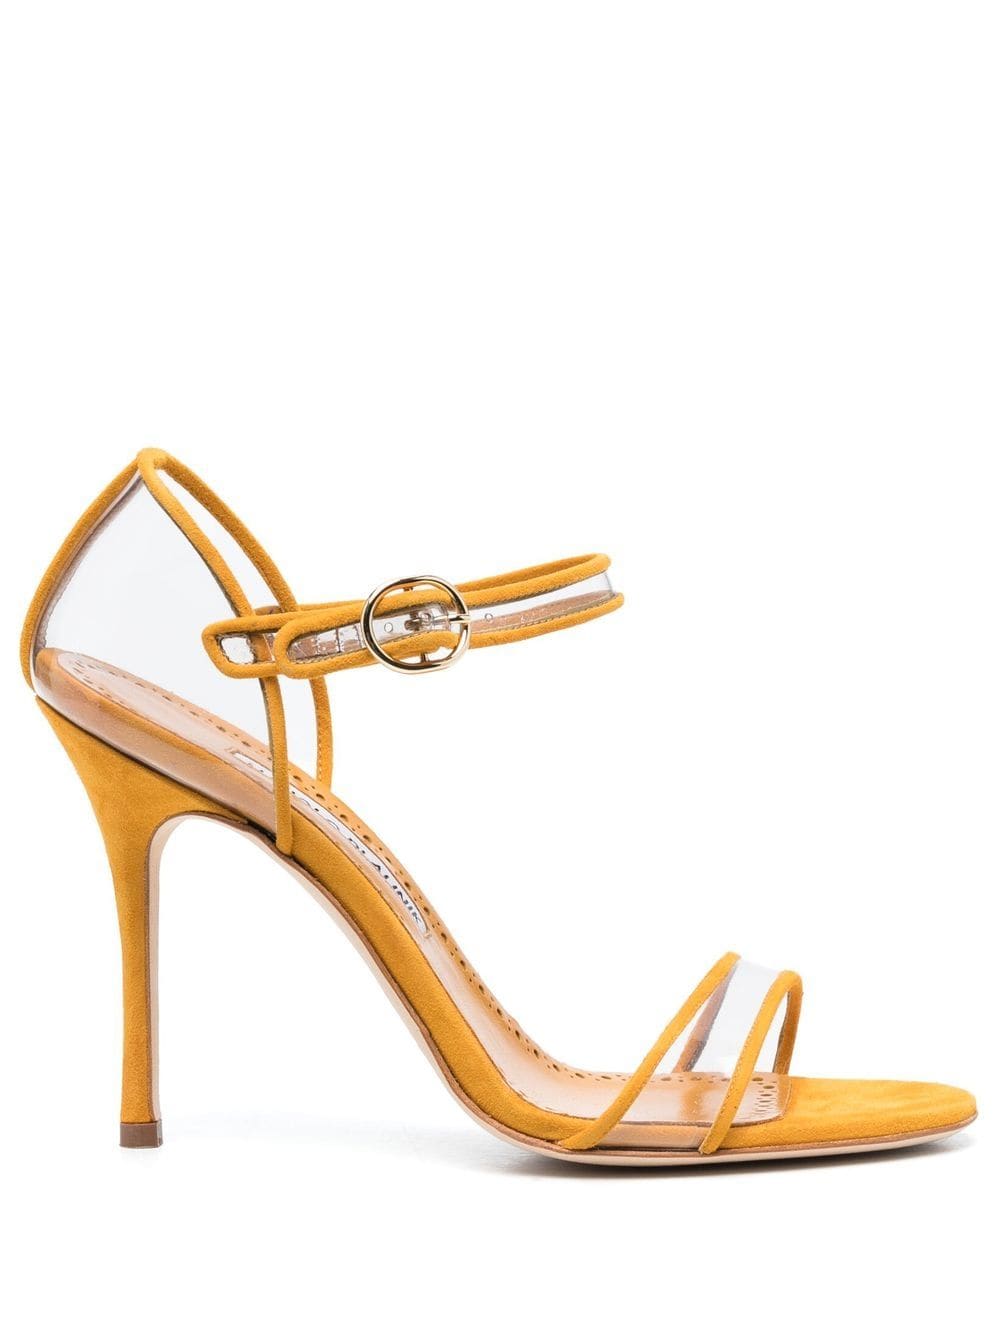 Manolo Blahnik Fersen 105mm suede sandals - Yellow von Manolo Blahnik